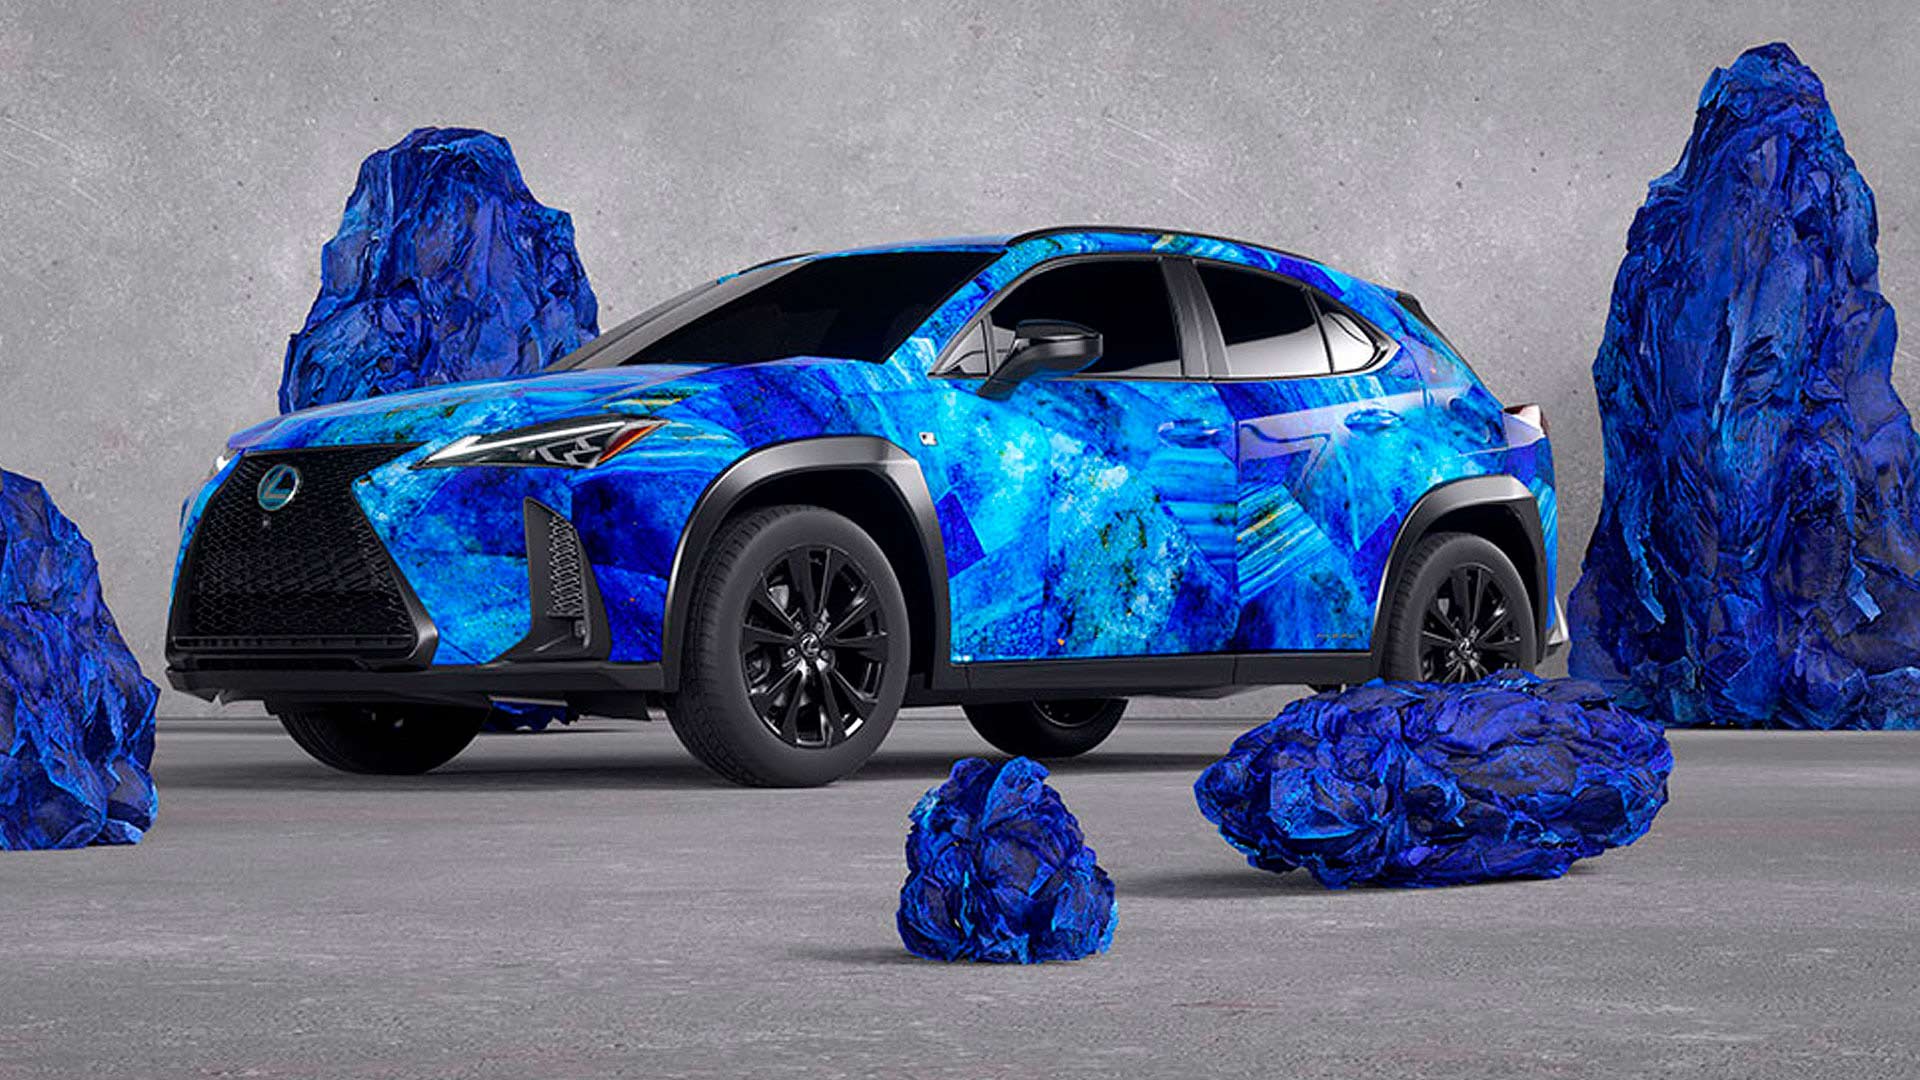 Ein Lexus mit blau bemaltem Motiv steht vor blauen Felsen.